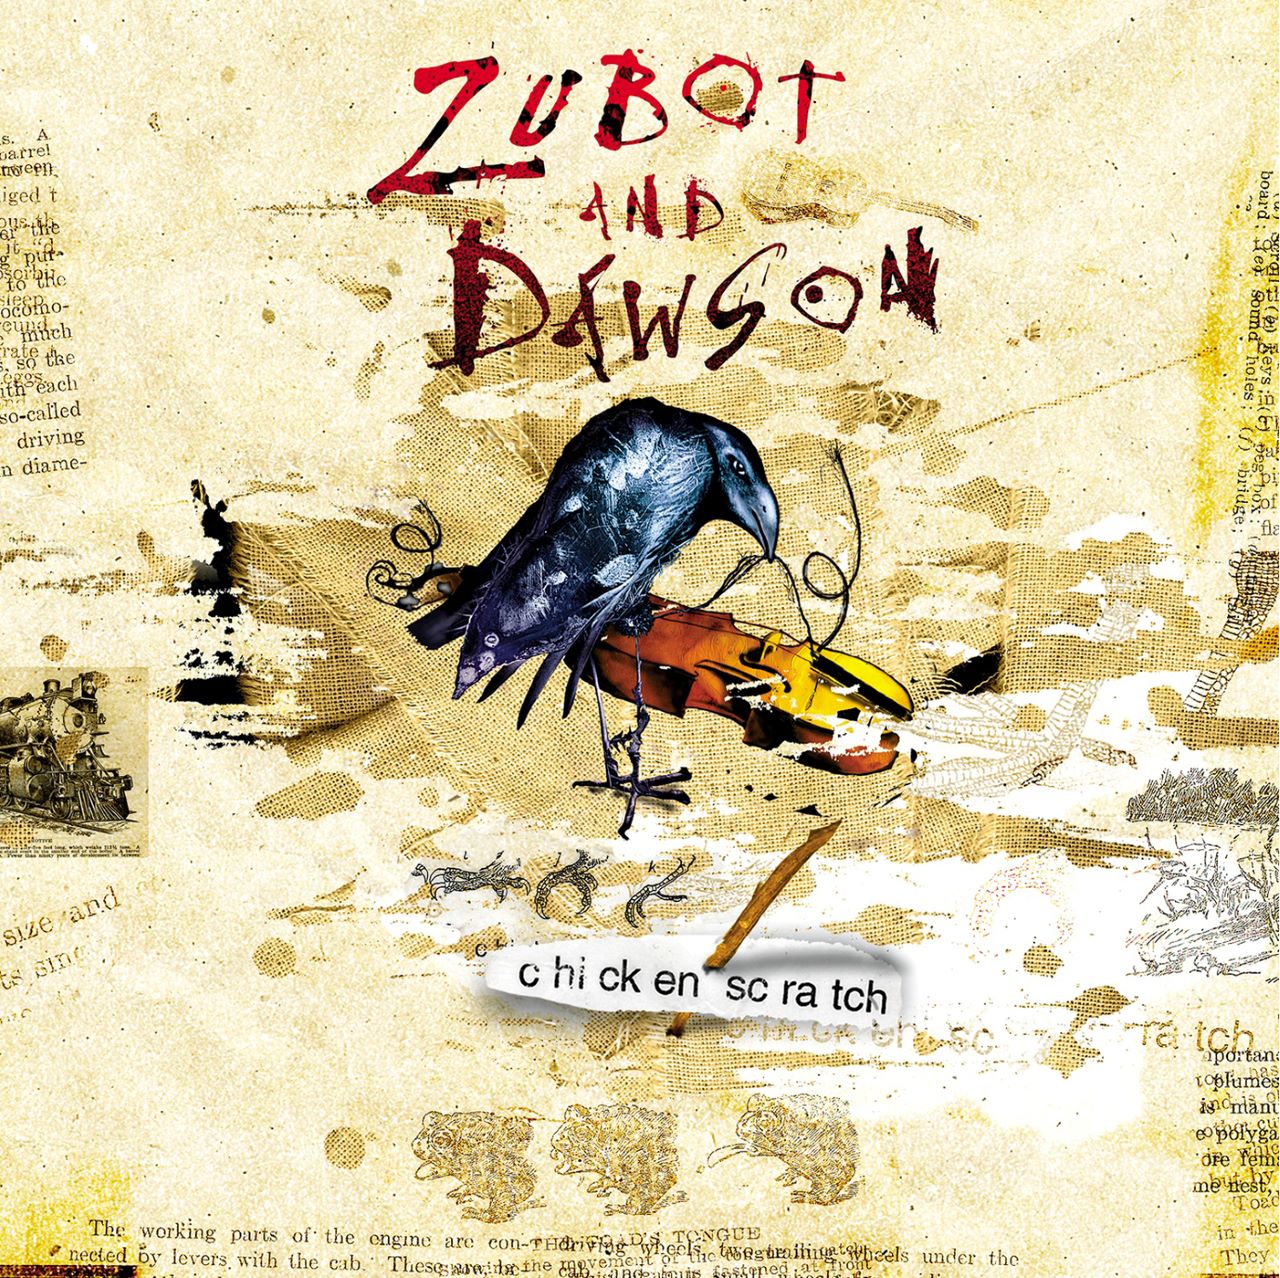 Zubot And Dawson - Chicken Scratch cover album